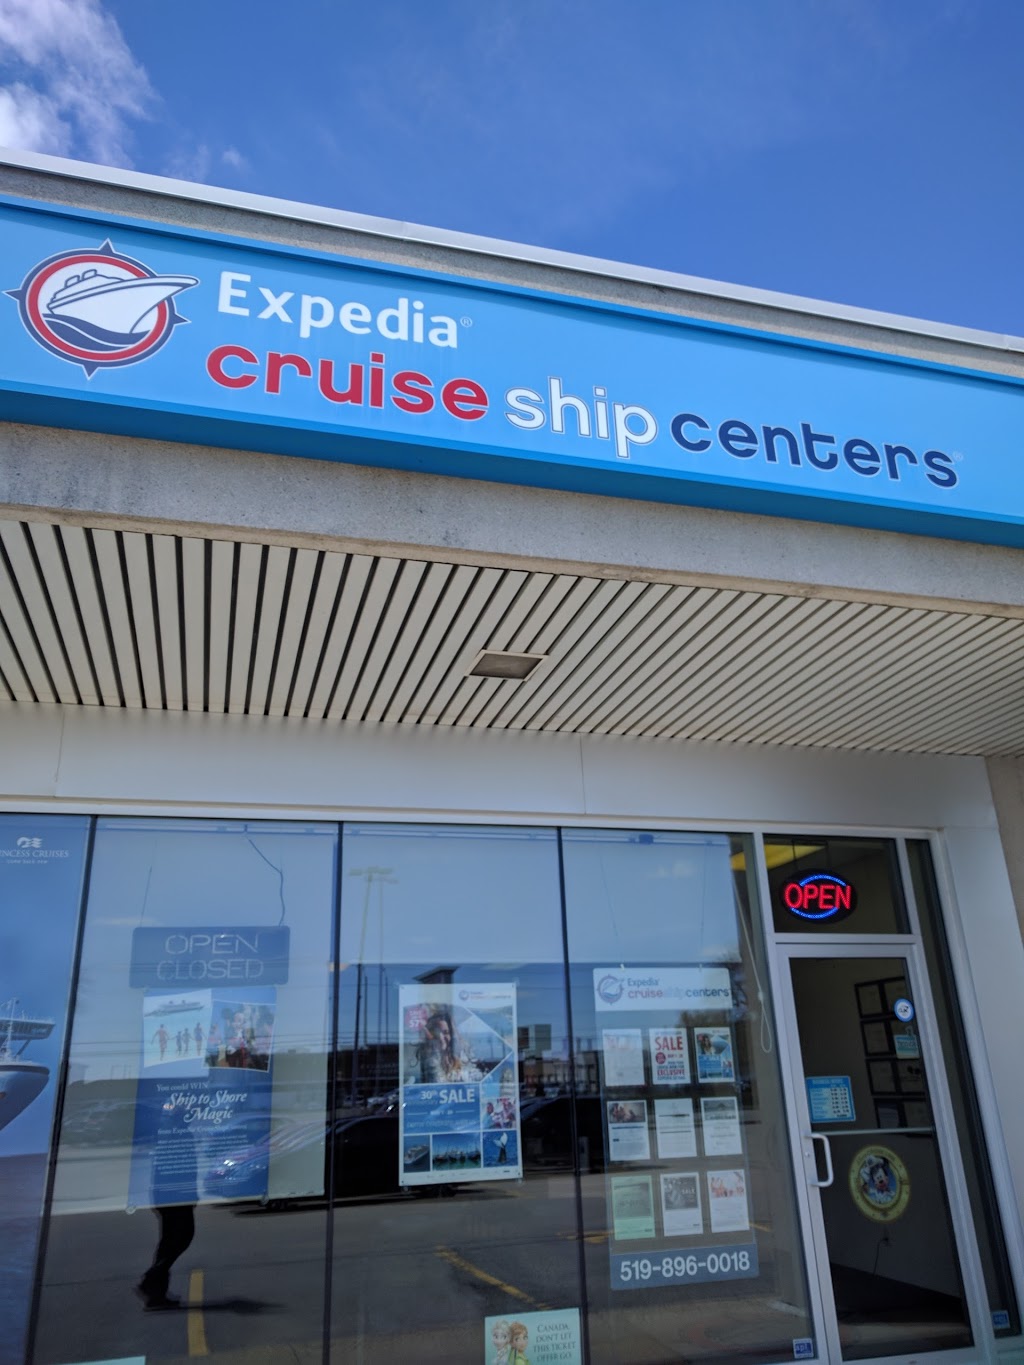 Expedia CruiseShipCenters | 500 Fairway Rd S #10, Kitchener, ON N2C 1X3, Canada | Phone: (866) 799-3499